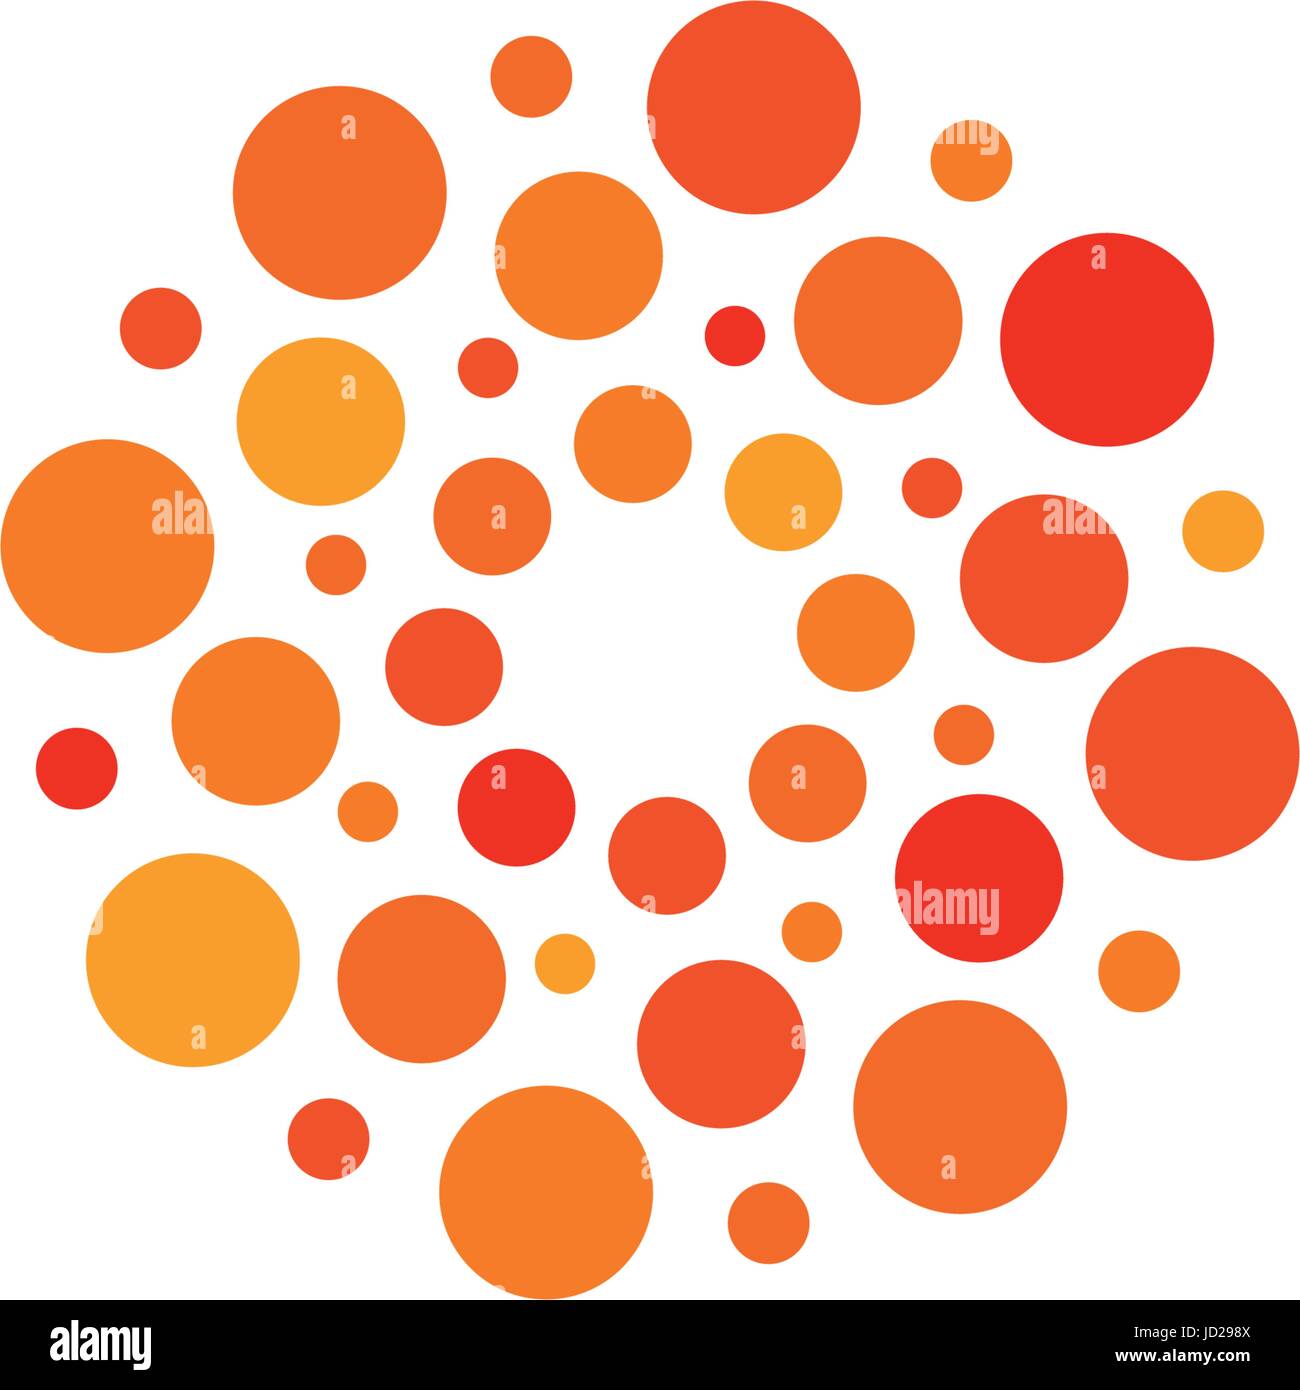 Abstract isolata forma tonda arancione e il colore rosso, il logo stilizzato punteggiata sun logo su sfondo bianco illustrazione vettoriale. Illustrazione Vettoriale